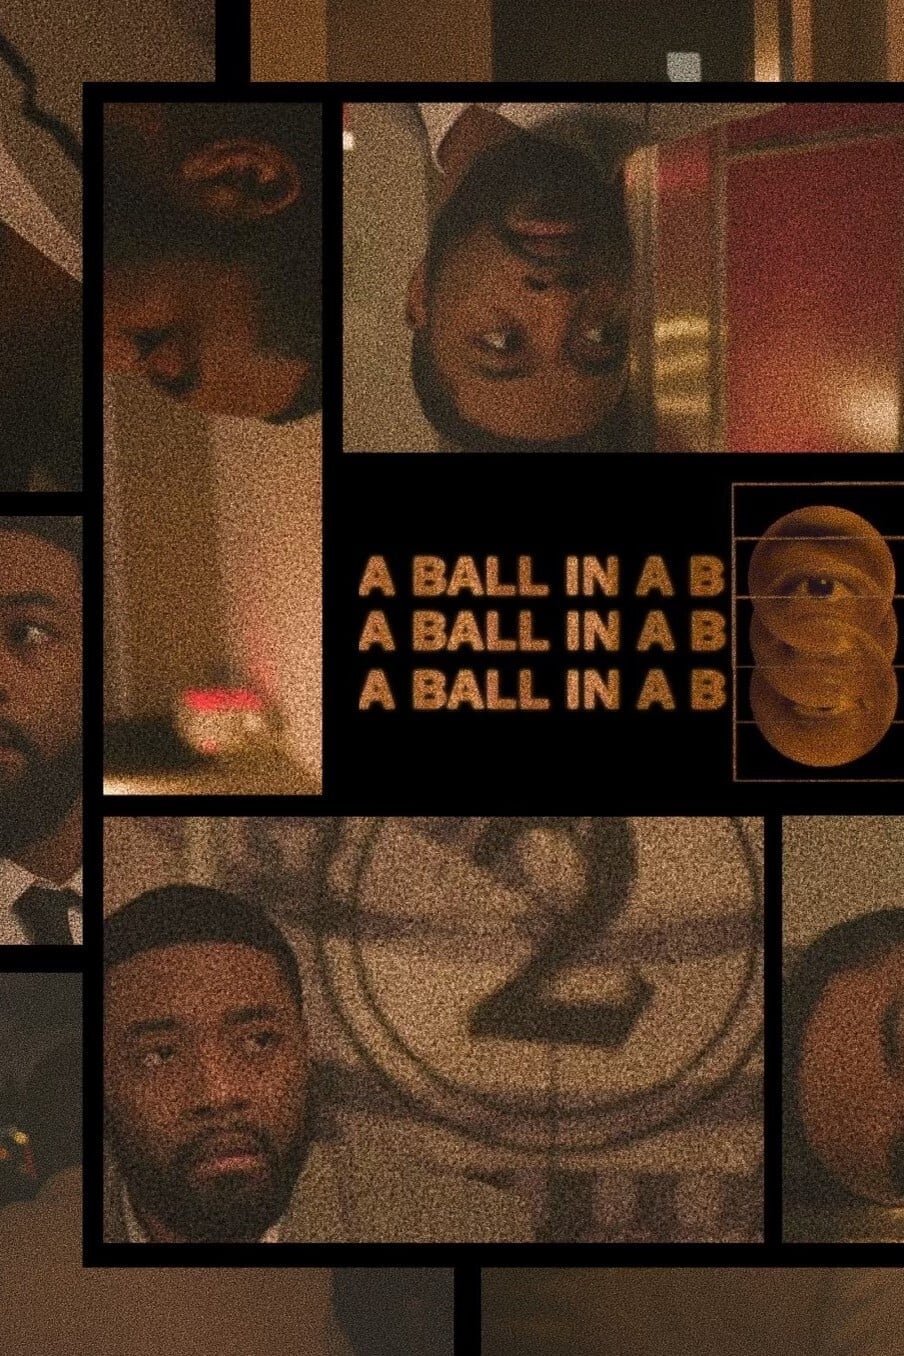 A Ball In A Box